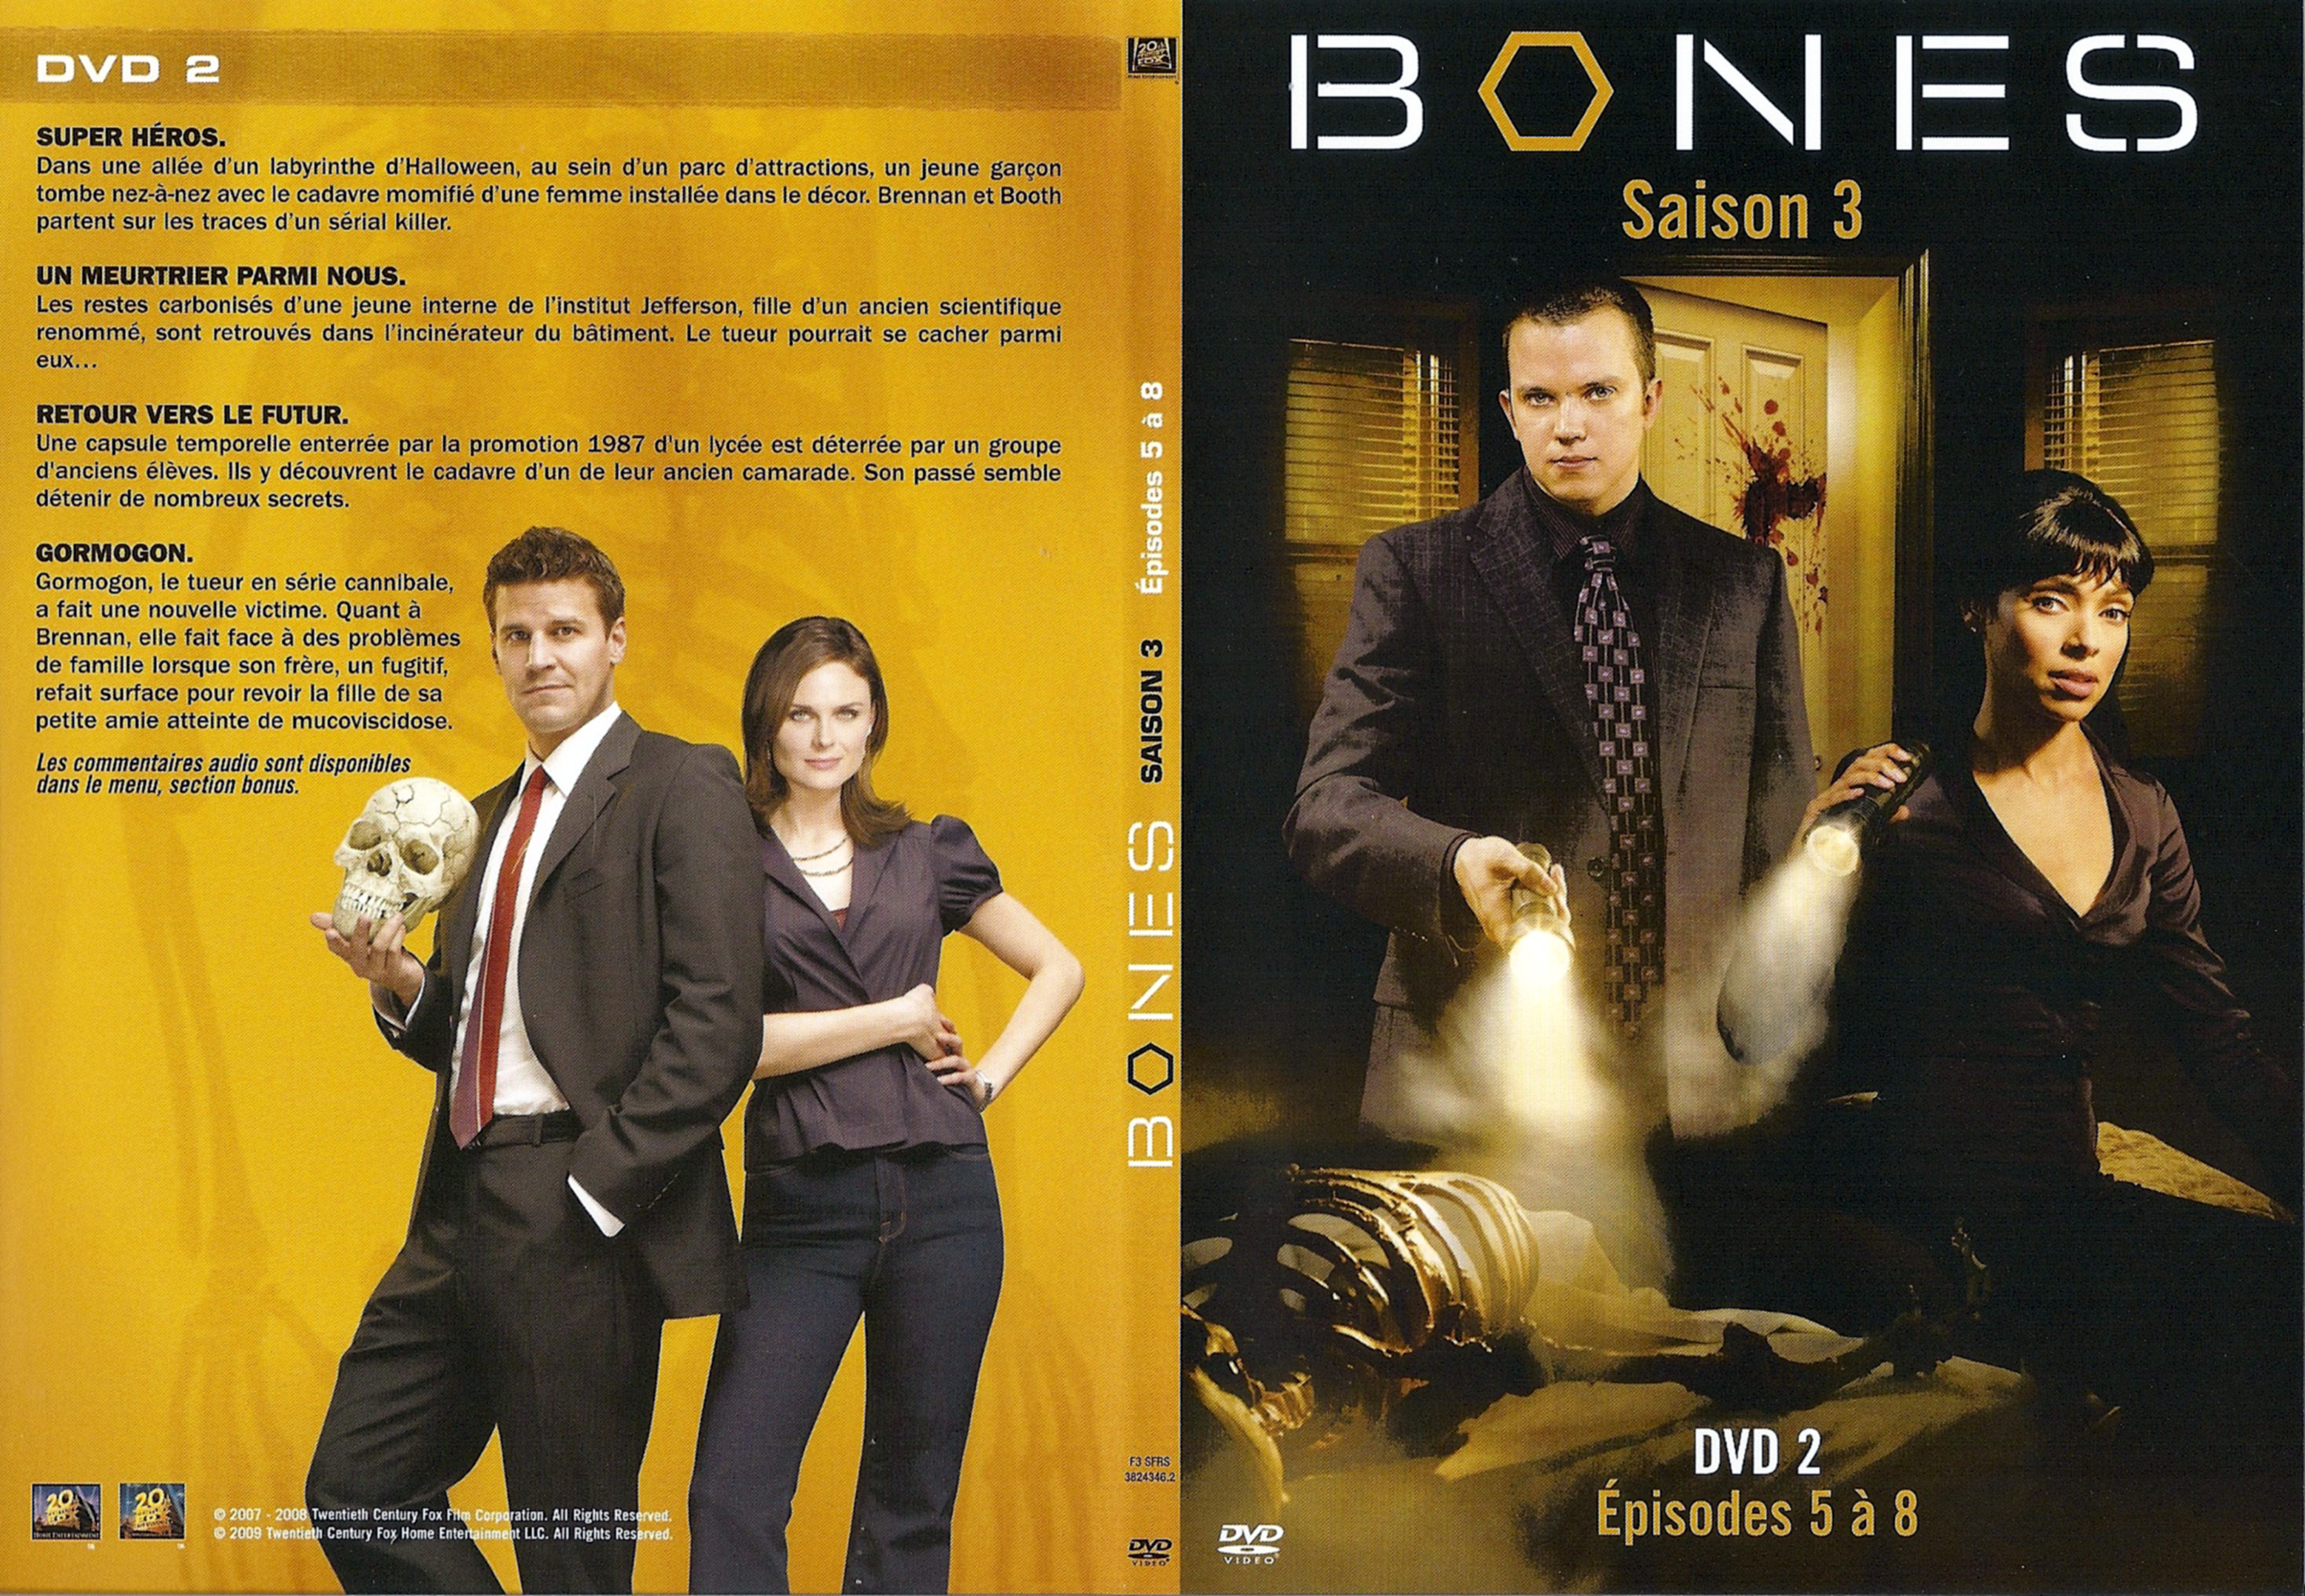 Jaquette DVD Bones Saison 3 DVD 2